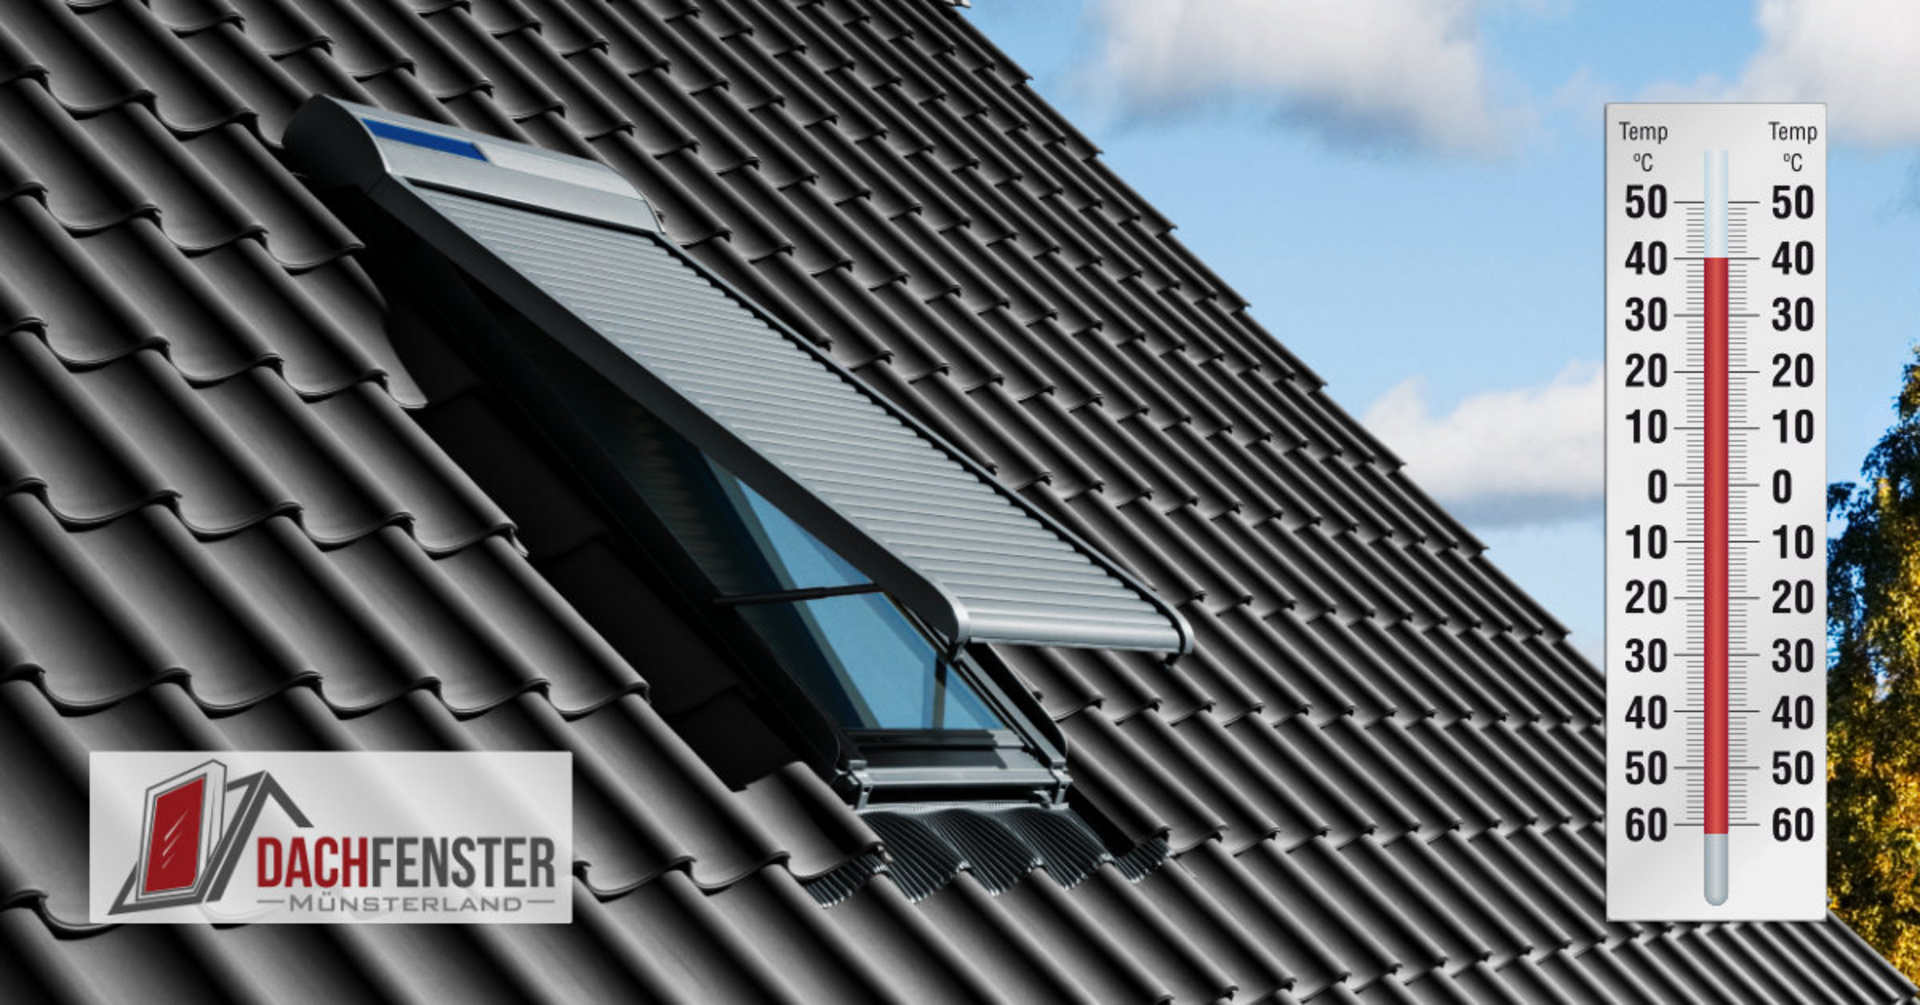 Dachfenster Münsterland - Ideen mit Ausblick